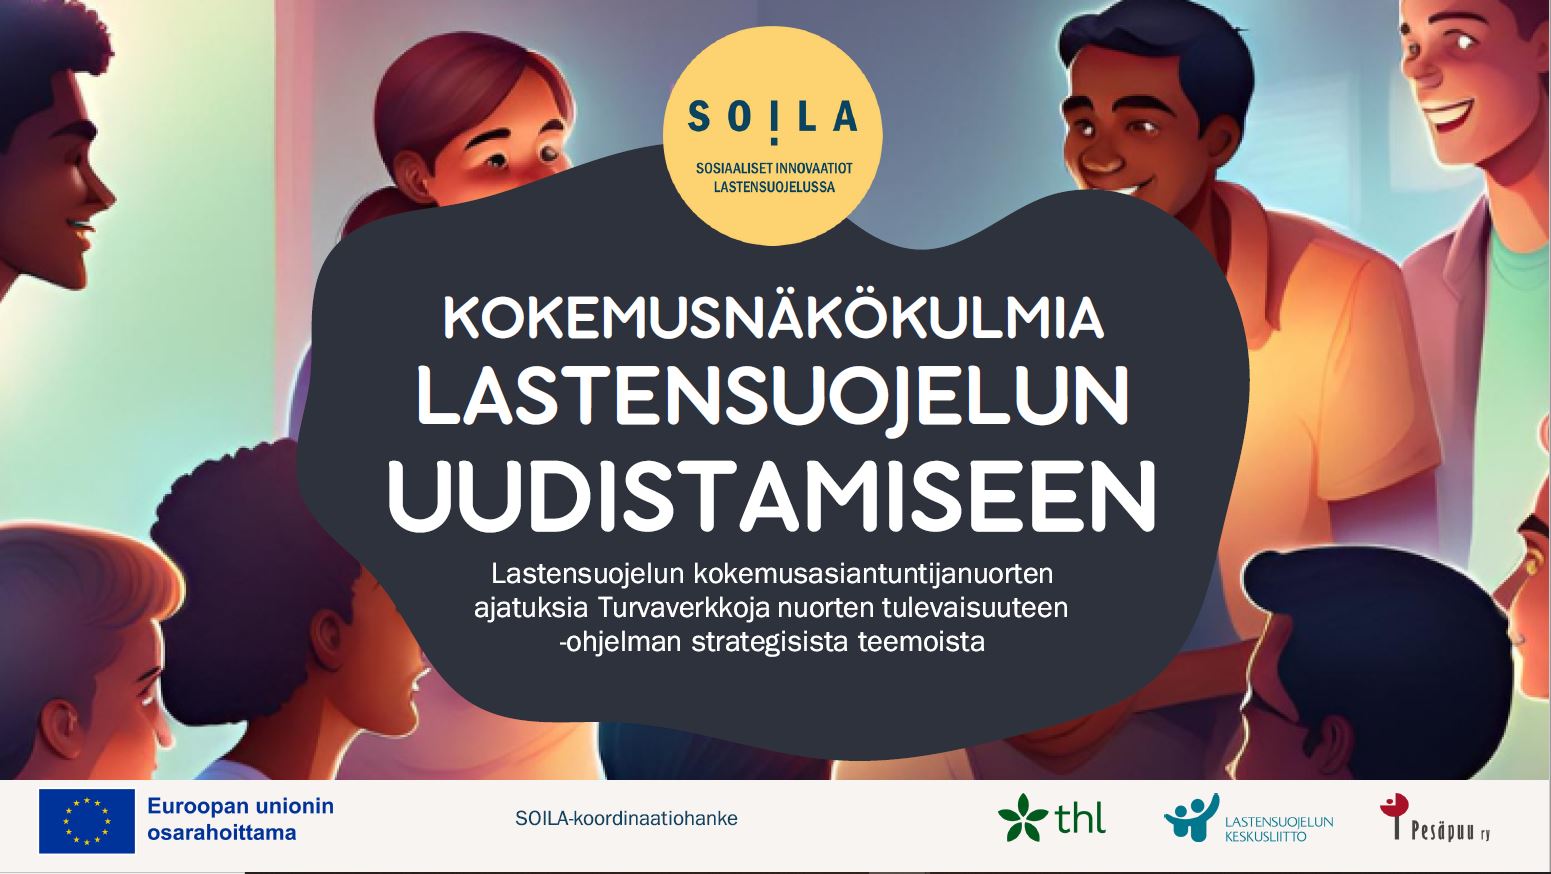 SOILA-koordinaatiohankkeen kokemusasiantuntijanuoret: Kokemusnäkökulmia lastensuojelun uudistamiseen